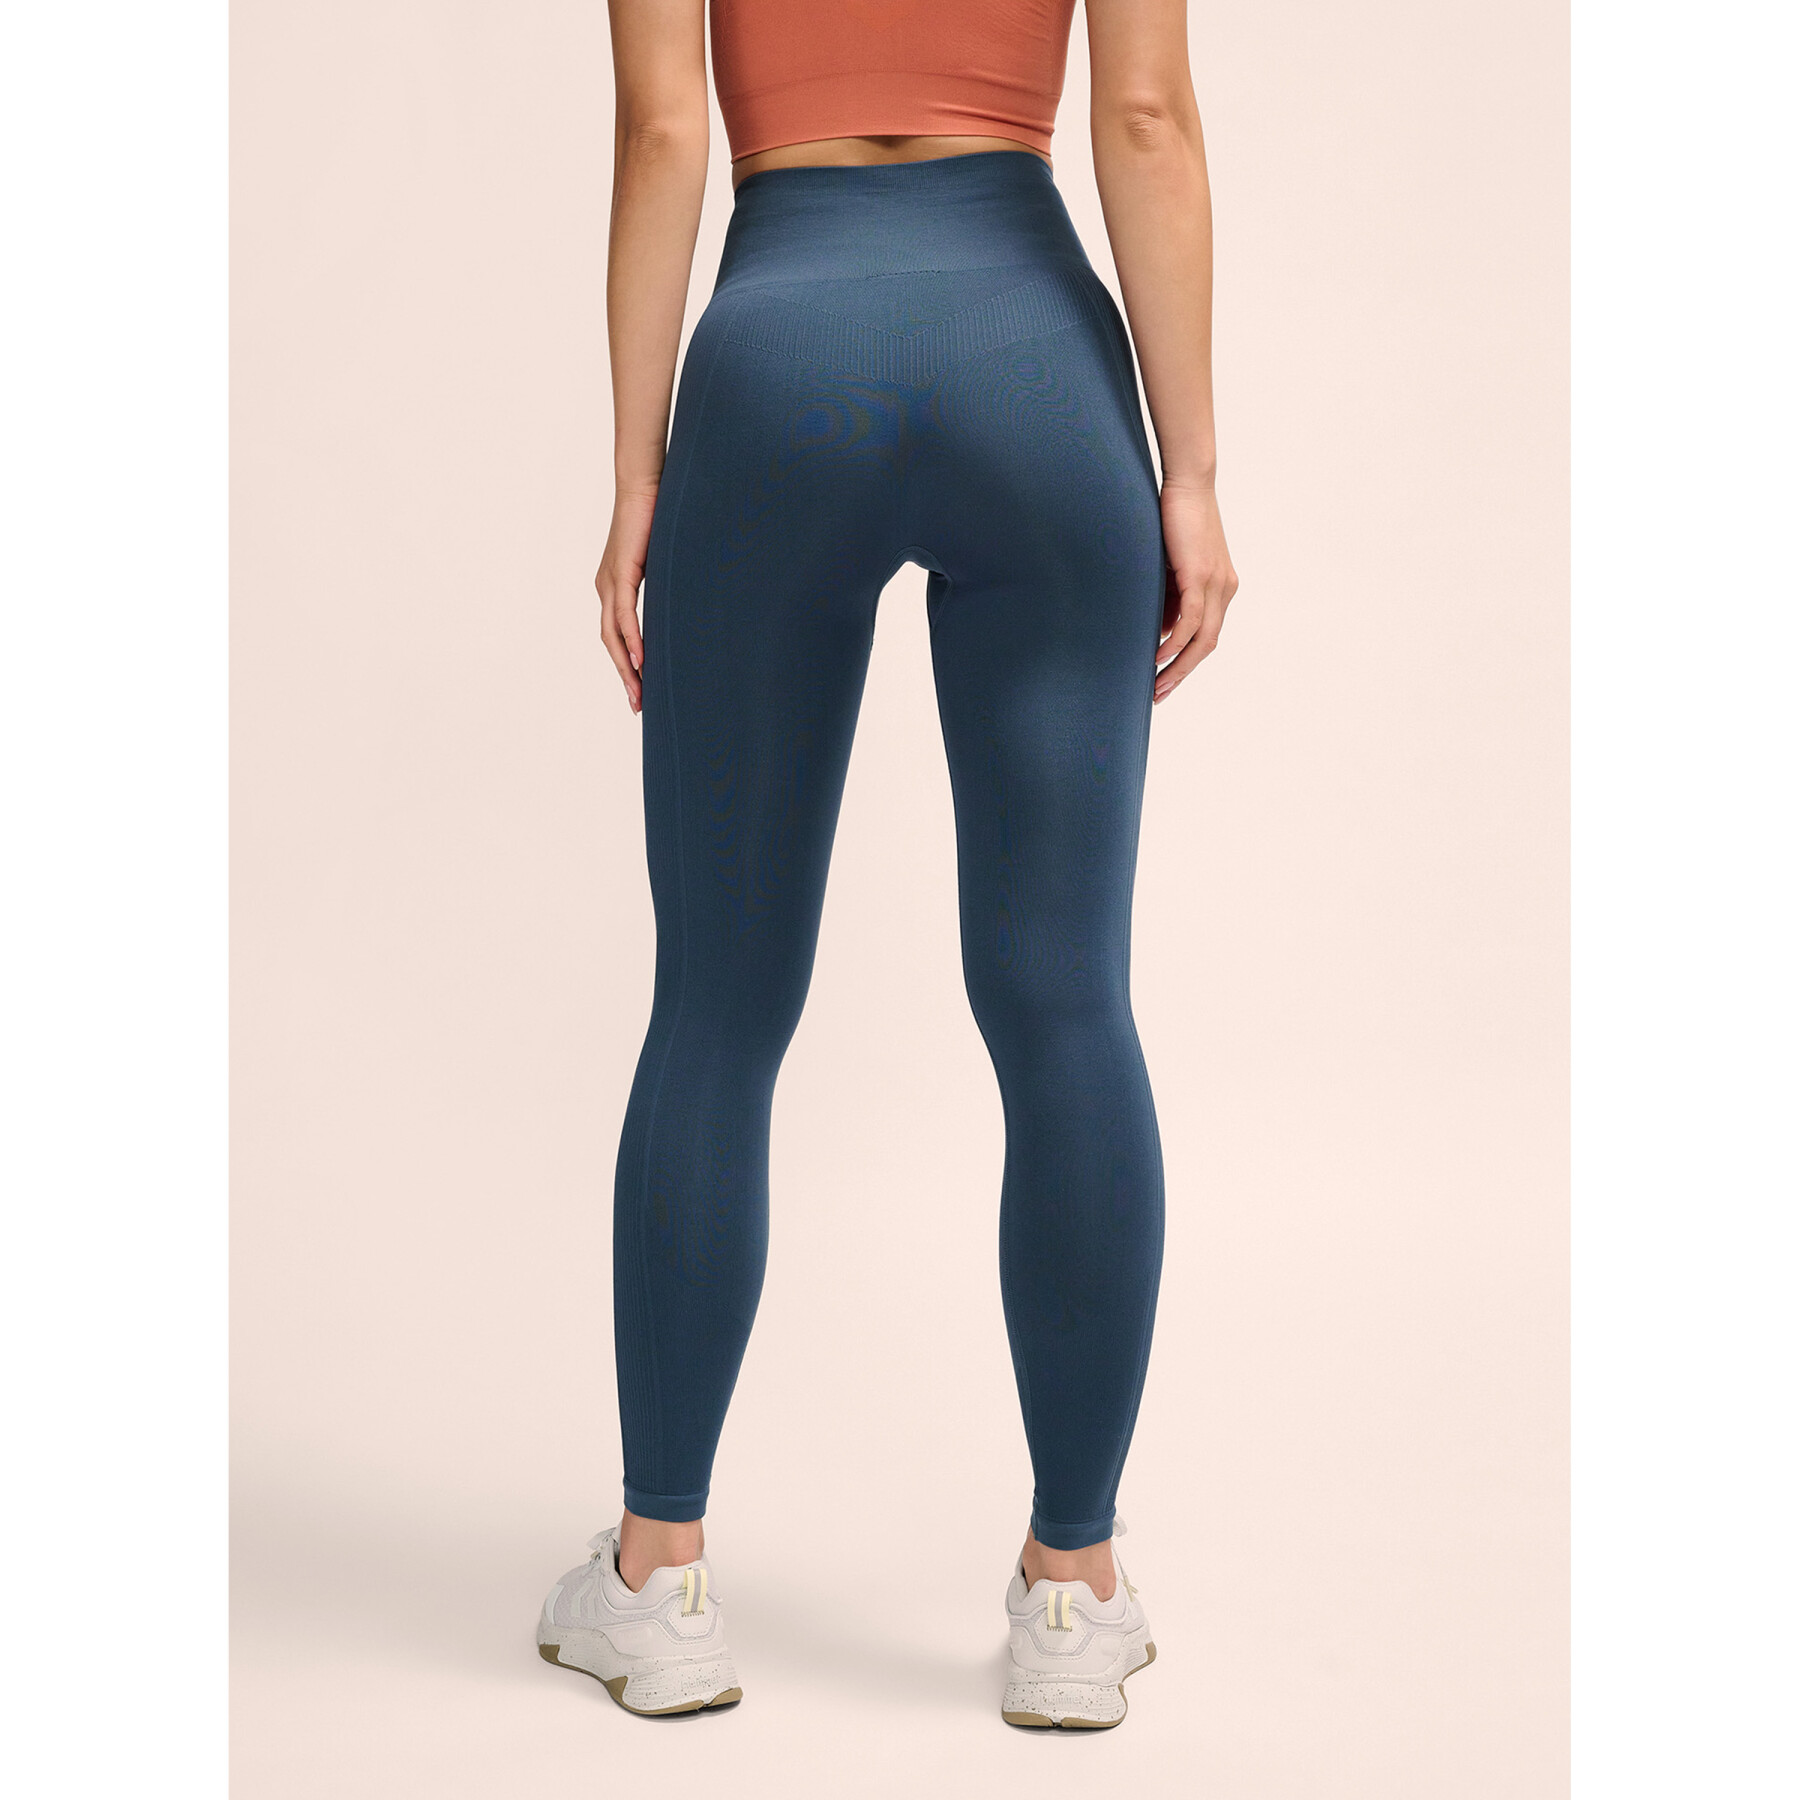 Women's high-waisted leggings Hummel Tif Seamless